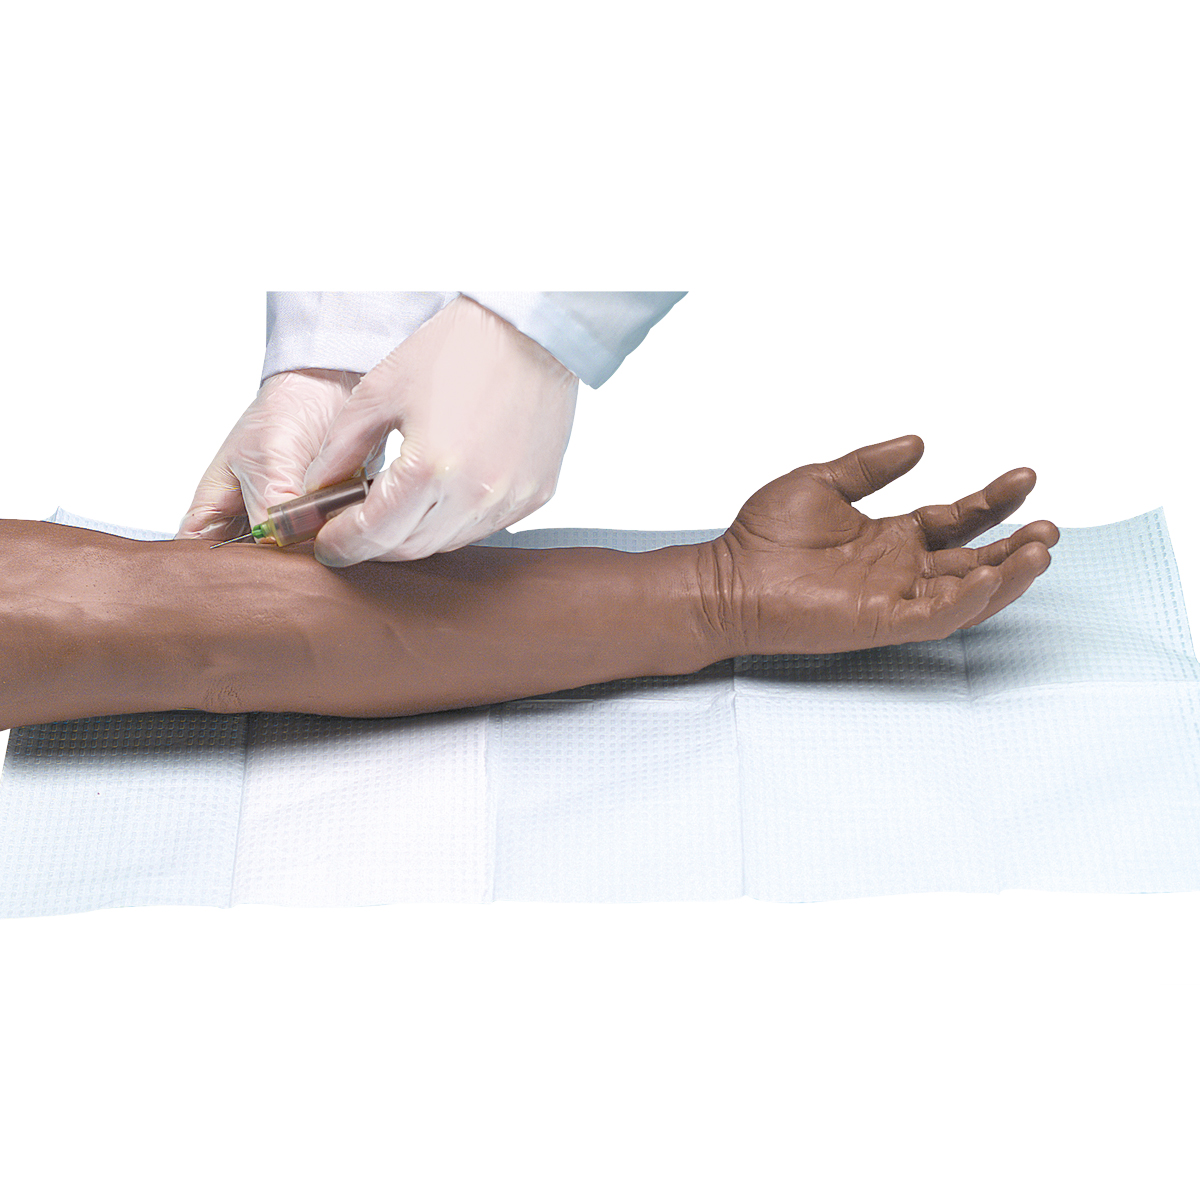 Усовершенствованный тренажер для венопункции и инъекции, рука, темная кожа